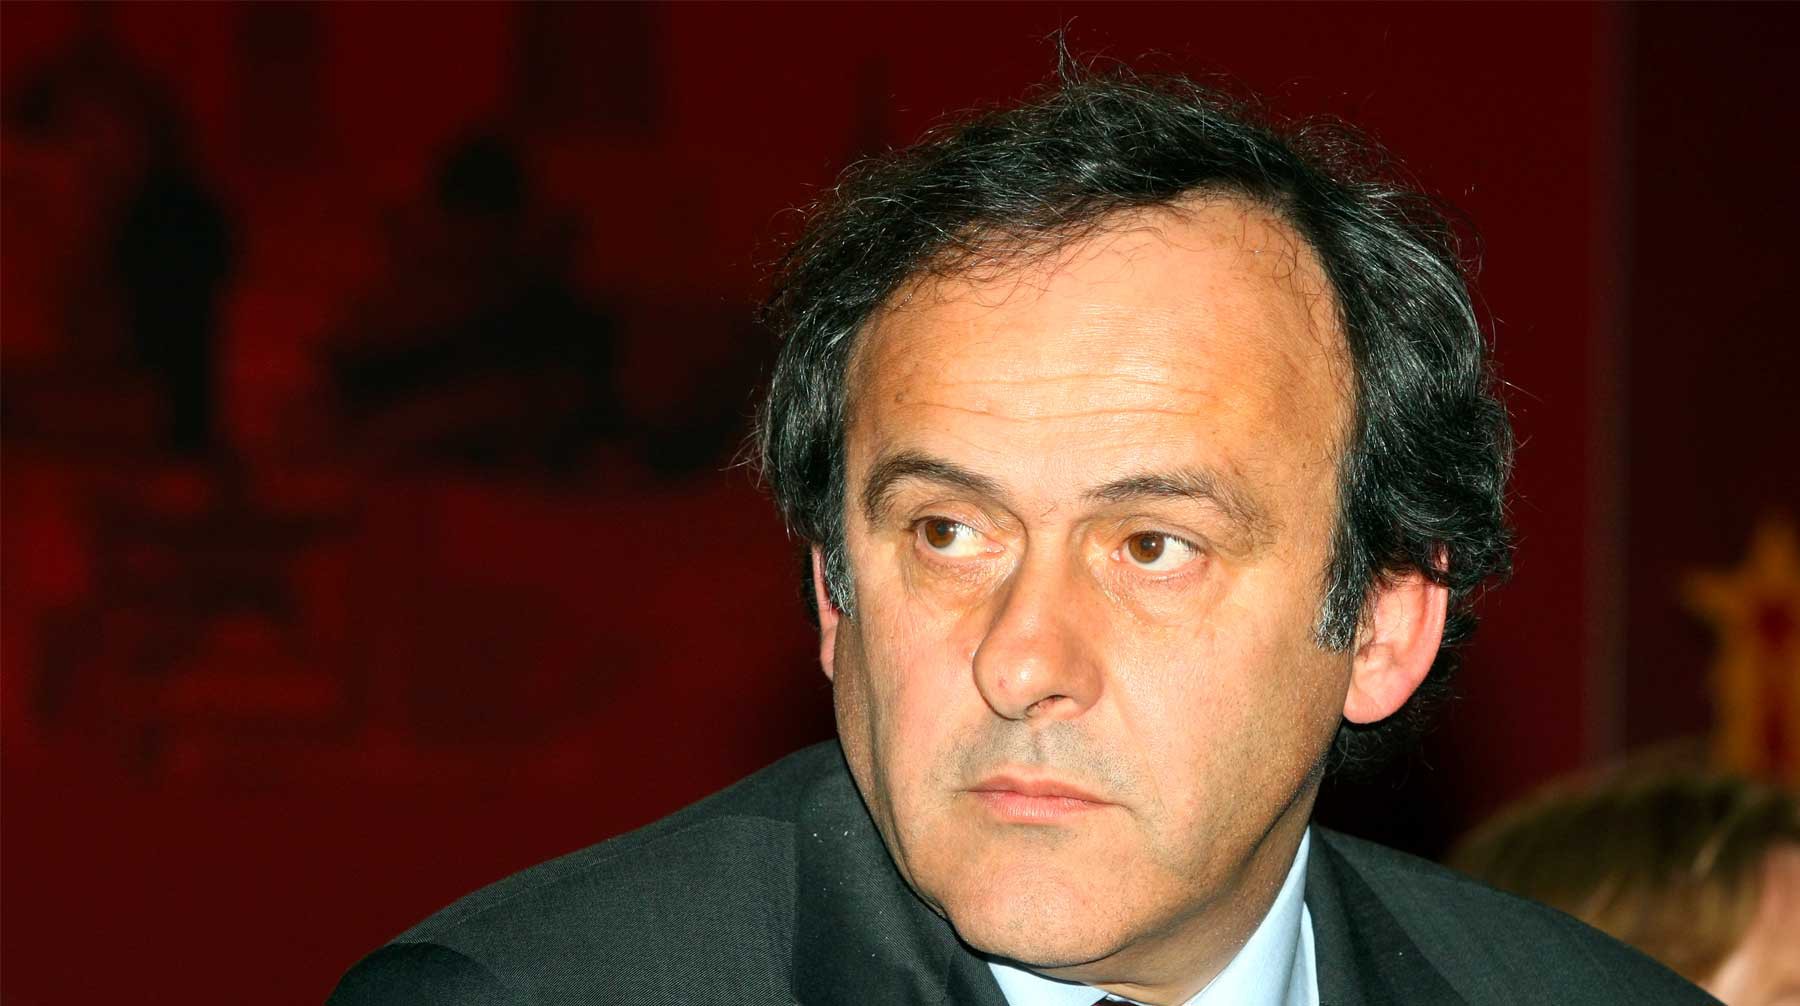 Dailystorm - Экс-главу UEFA Мишеля Платини арестовали по подозрению в коррупции